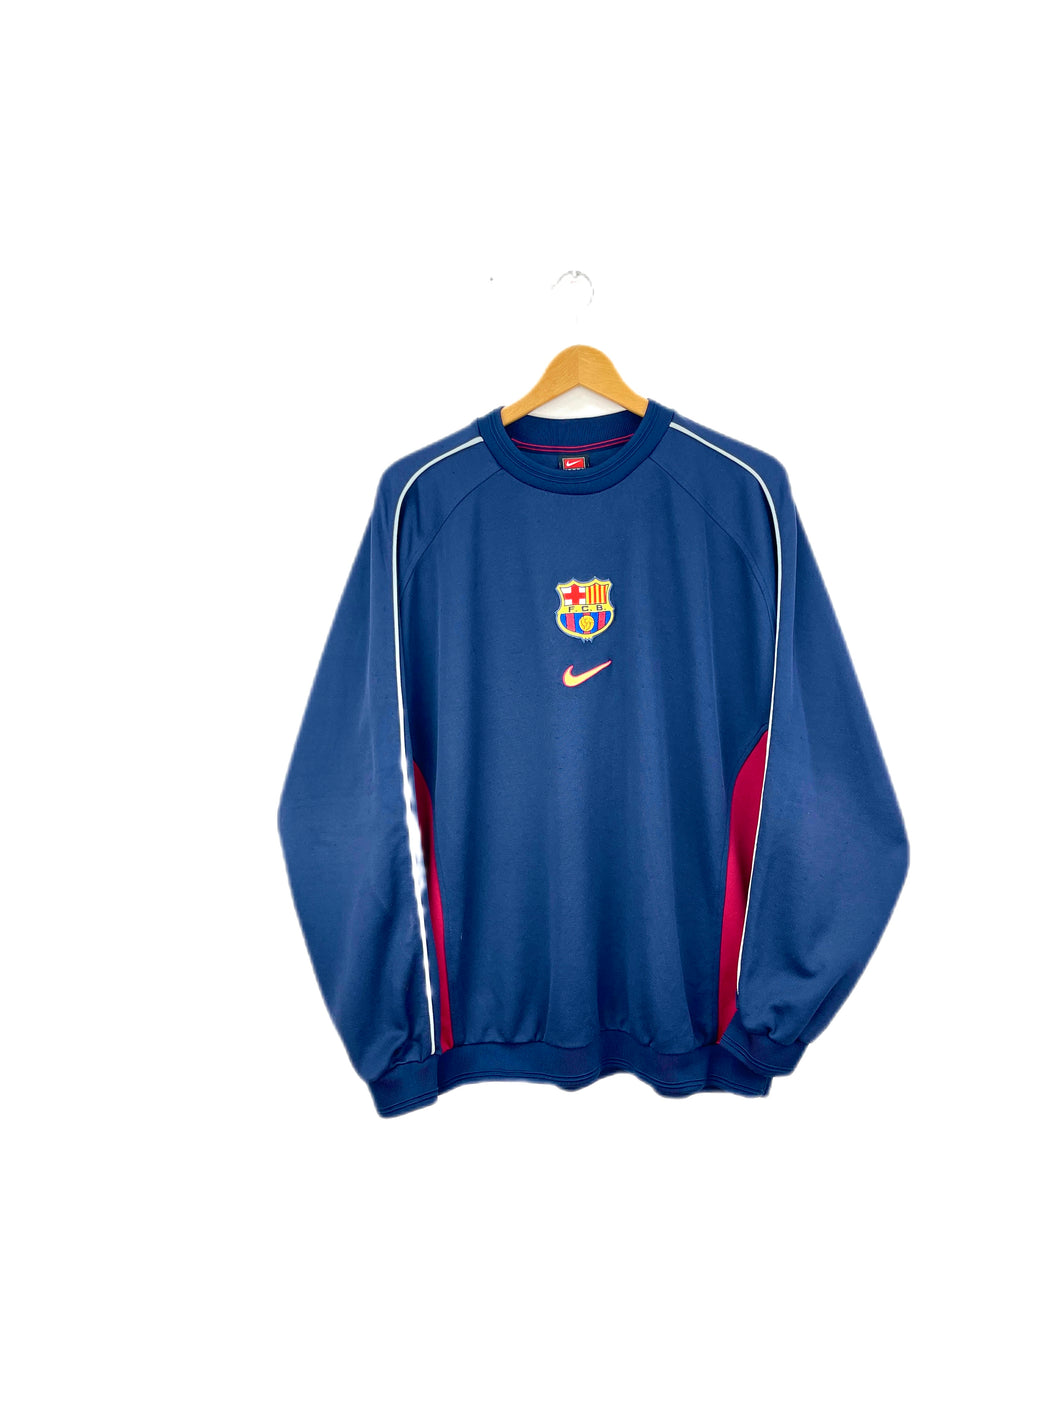 Nike F.C Barcelona 1999/00 Sweatshirt - XLarge